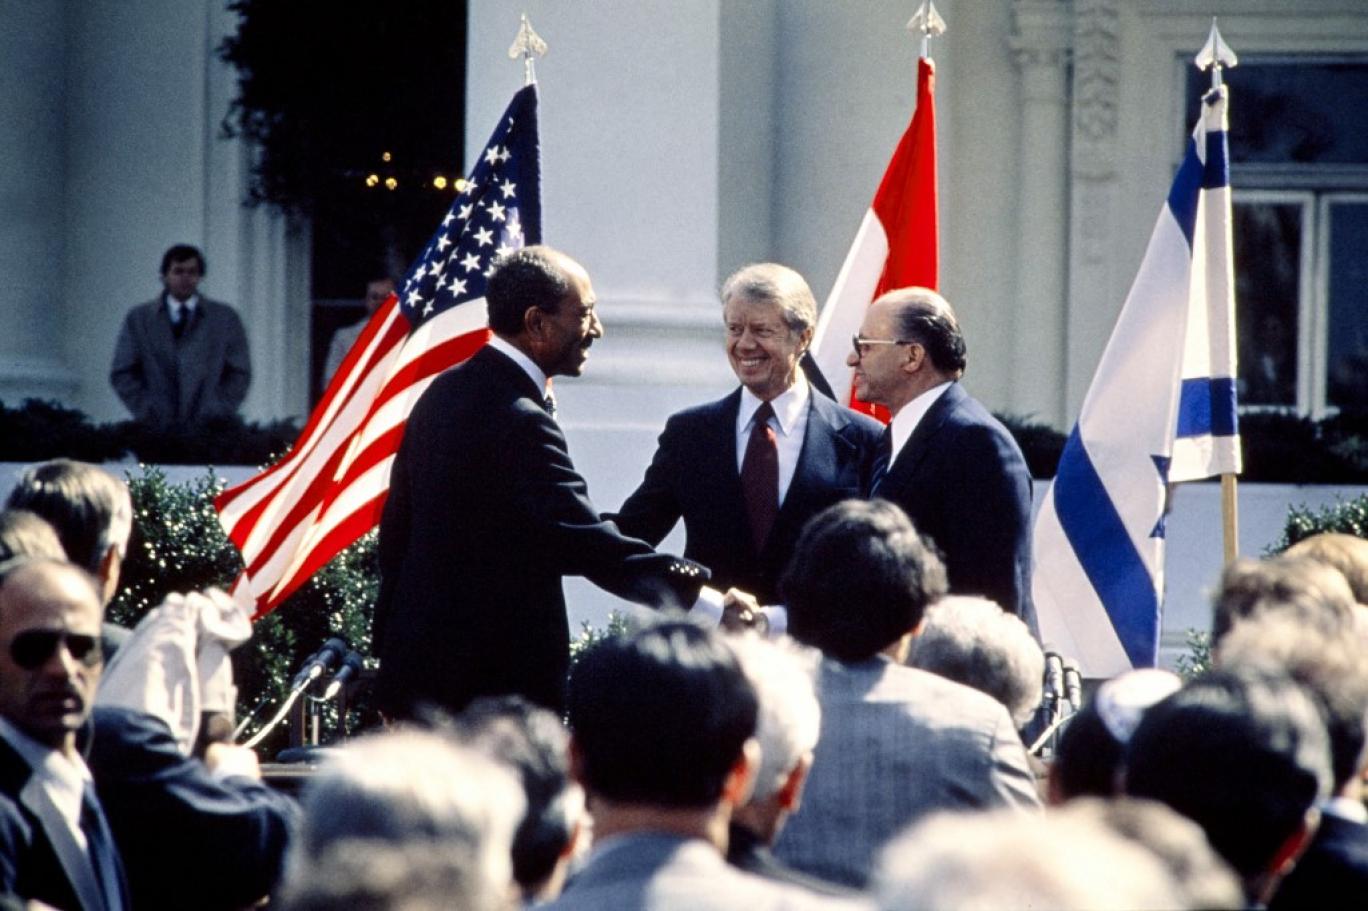 تسمح اتفاقية السلام الموقعة بين إسرائيل ومصر في 1979 بإقامة "ترتيبات أمن متفق عليها بناء على طلب أحد الطرفين وباتفاقهما" (أ ف ب)